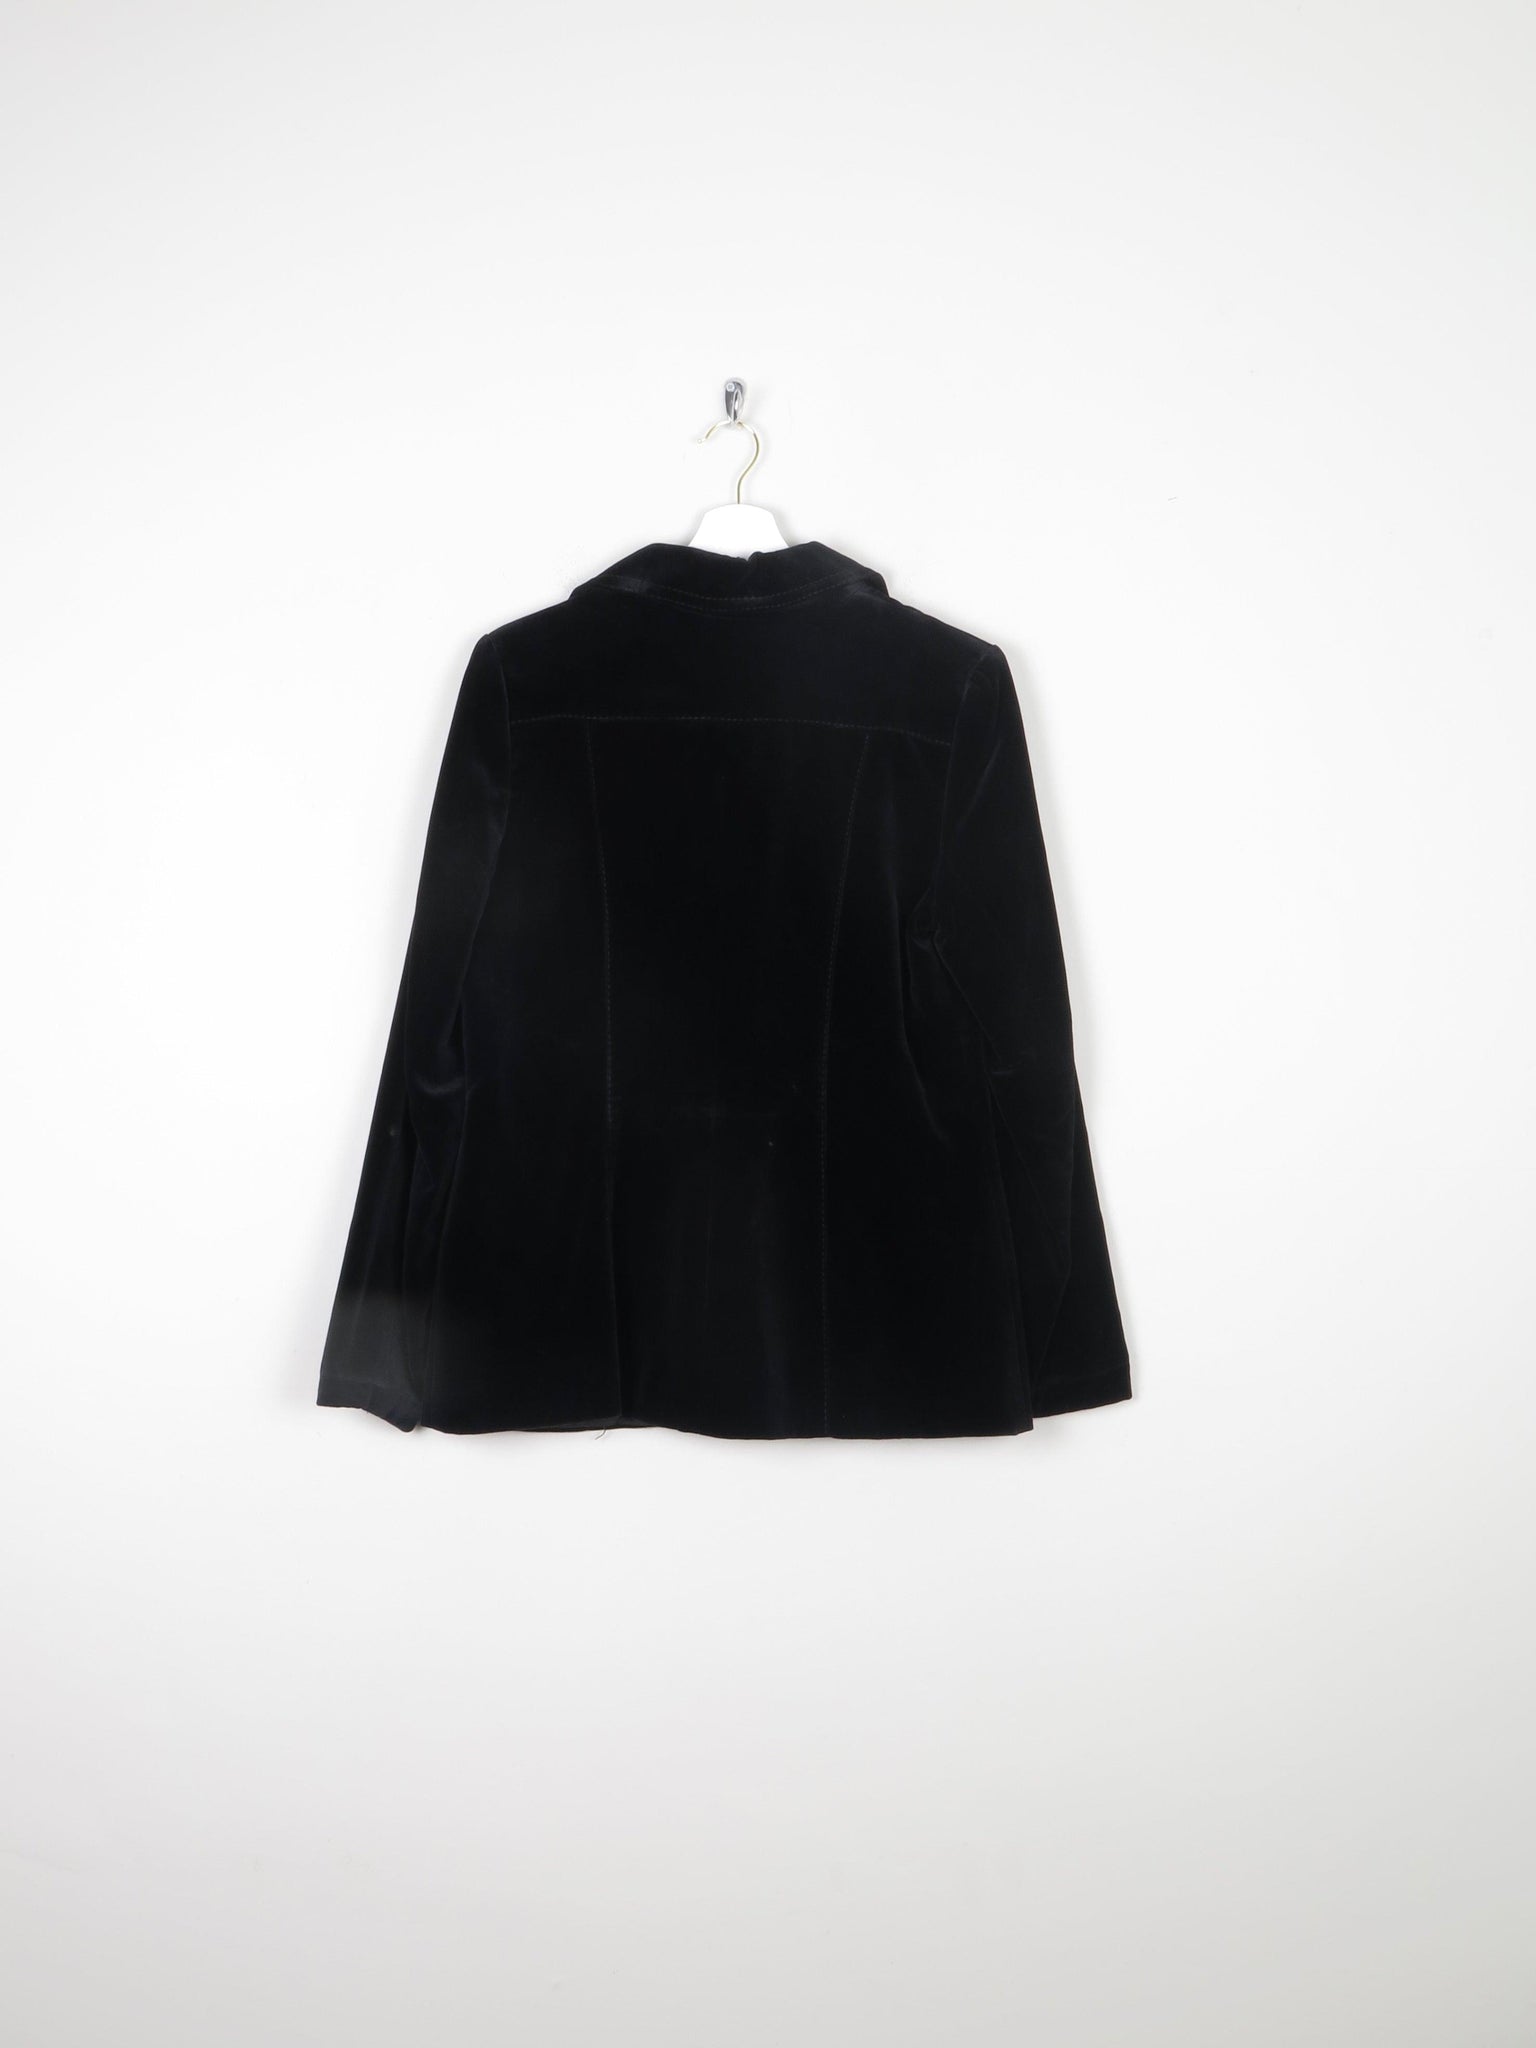 Women's Black Velvet 1970s Jacket 10/12 - The Harlequin